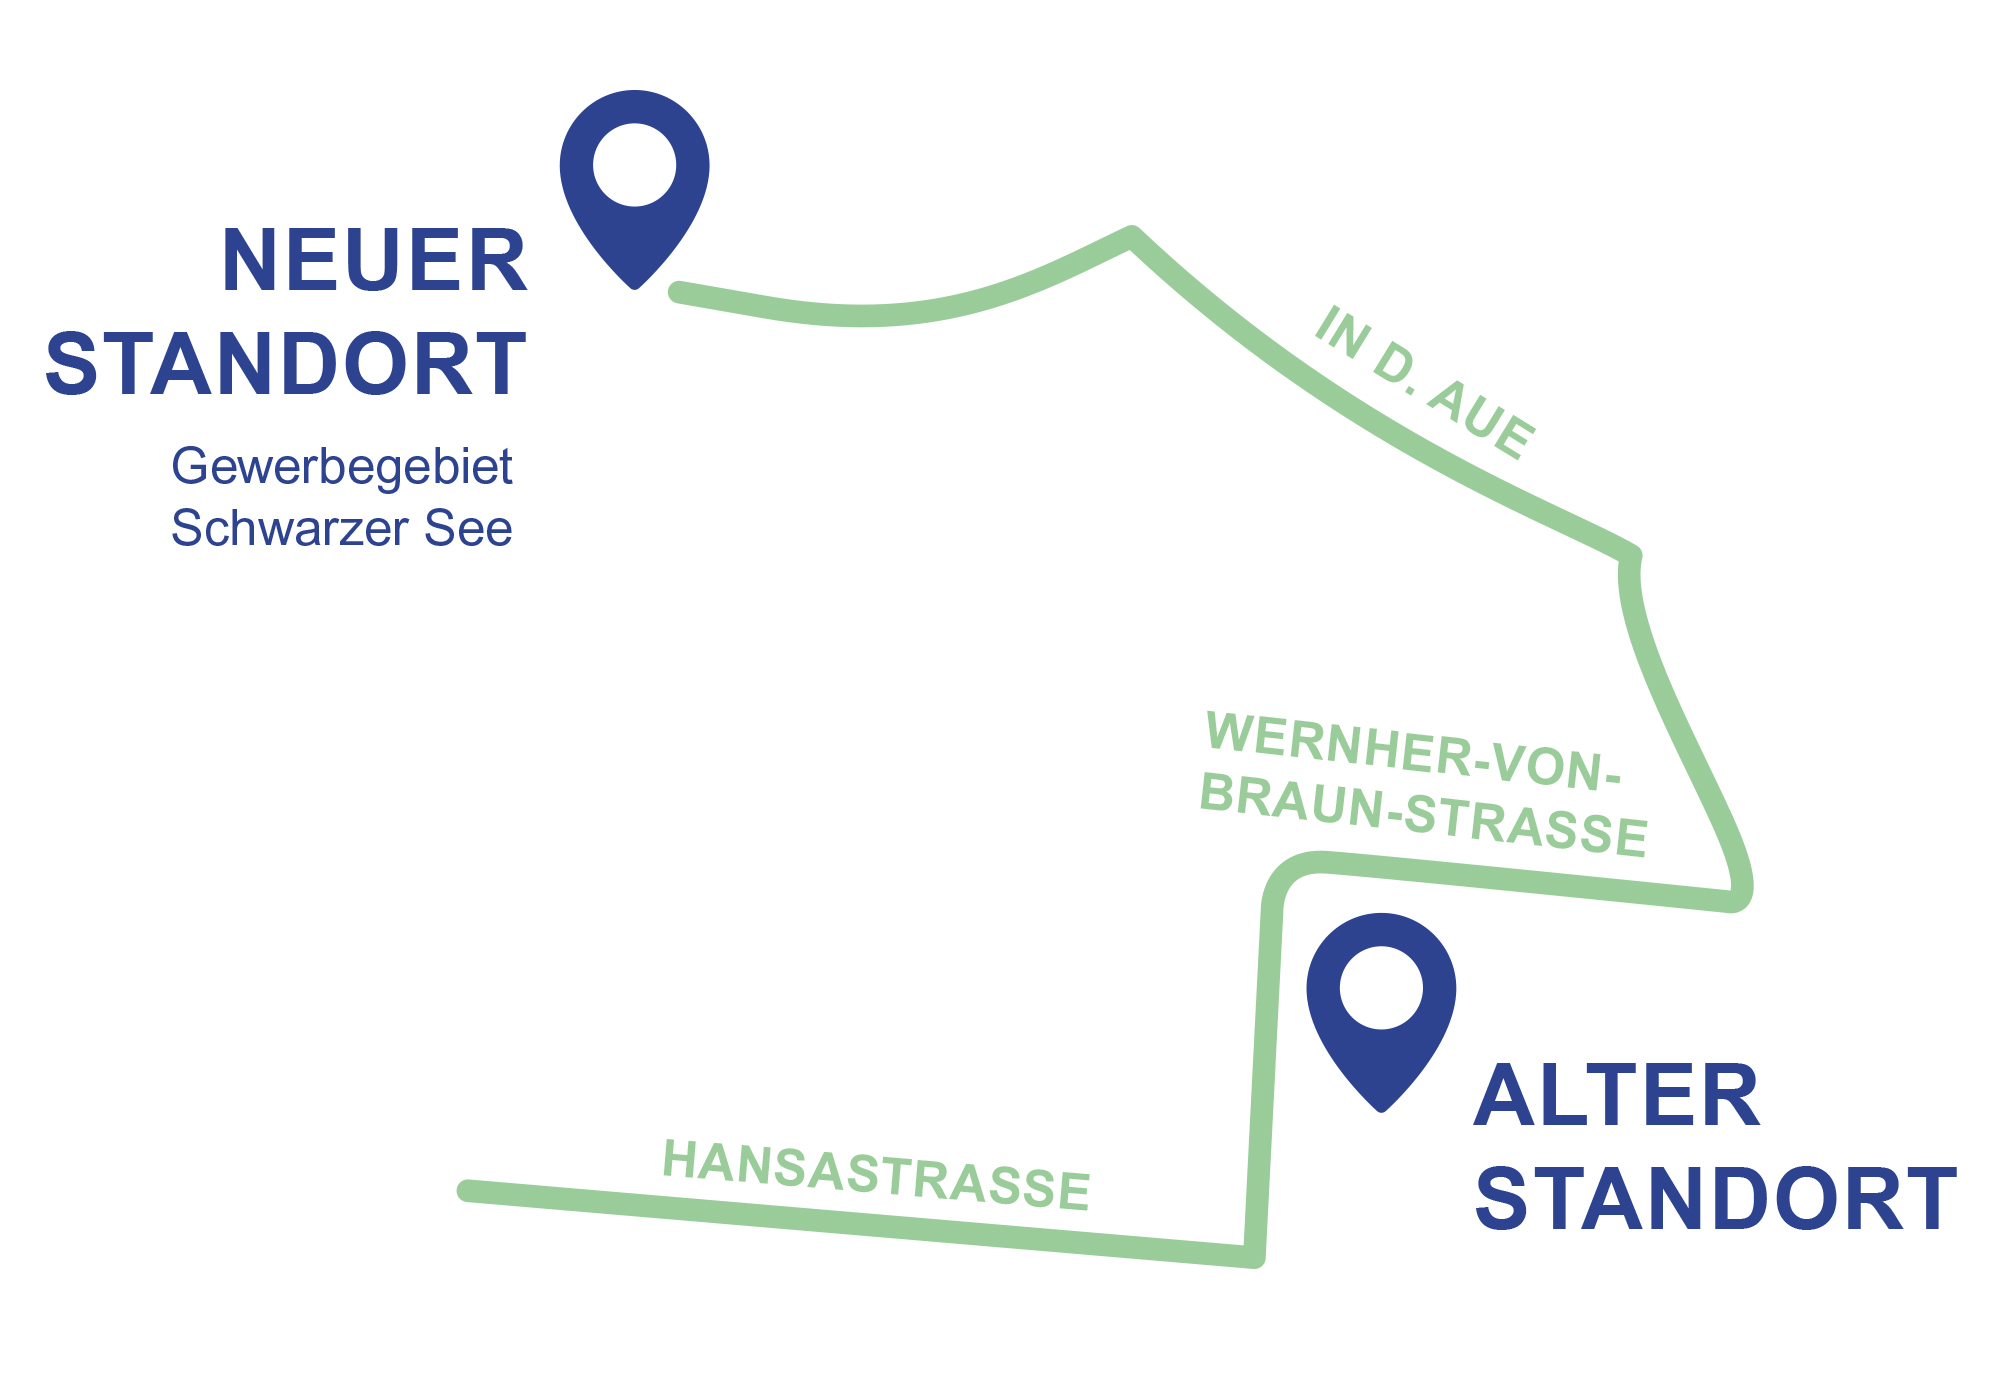 Die Skizze zeigt den Weg vom alten Standort der Grünannahme zum neuen Platz im Gewer-begebiet Schwarzer See. Grafik: Hagenhoff Werbeagentur